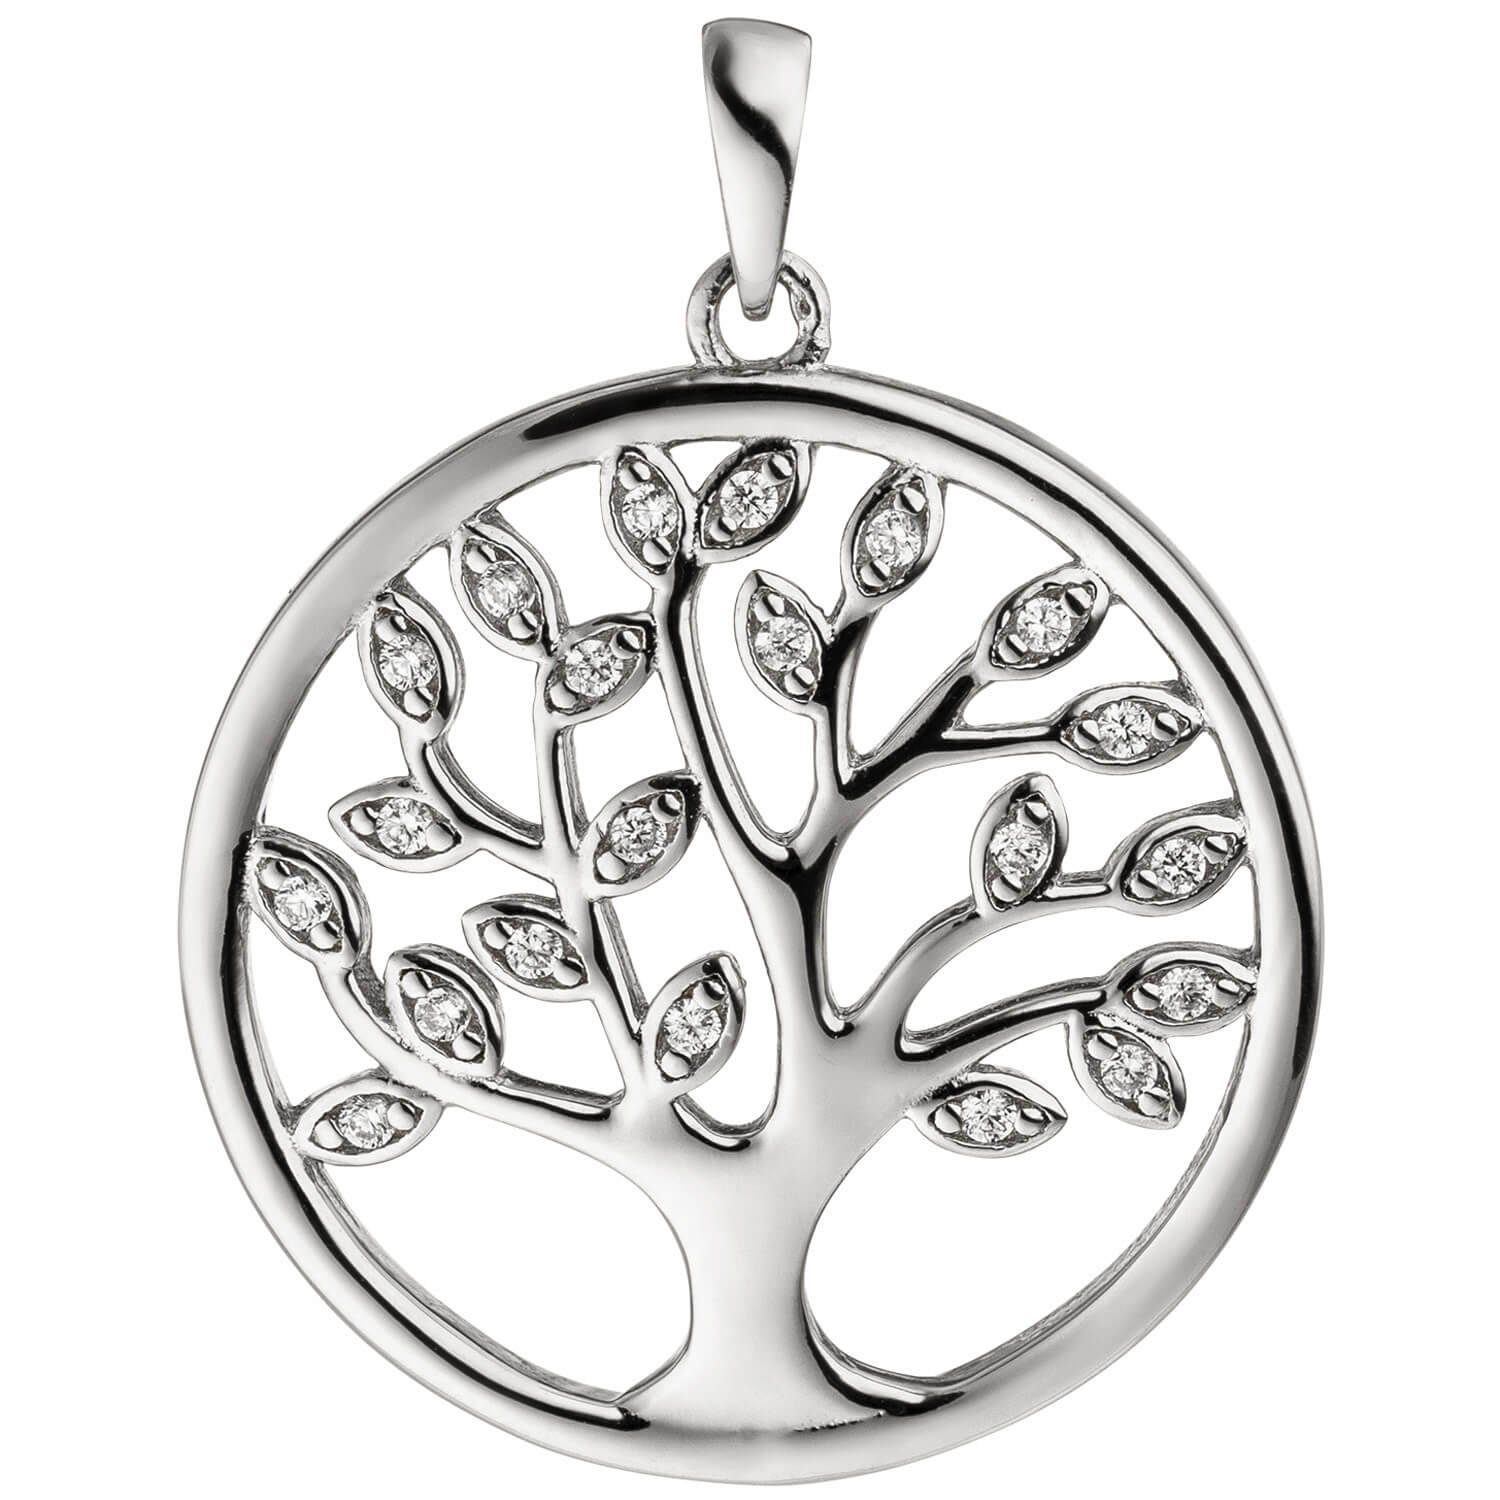 Silber Kettenanhänger aus rund, 925 Silber Schmuck Zirkonia rhodiniert, Anhänger Lebensbaum mit weißen Blättern Krone 925